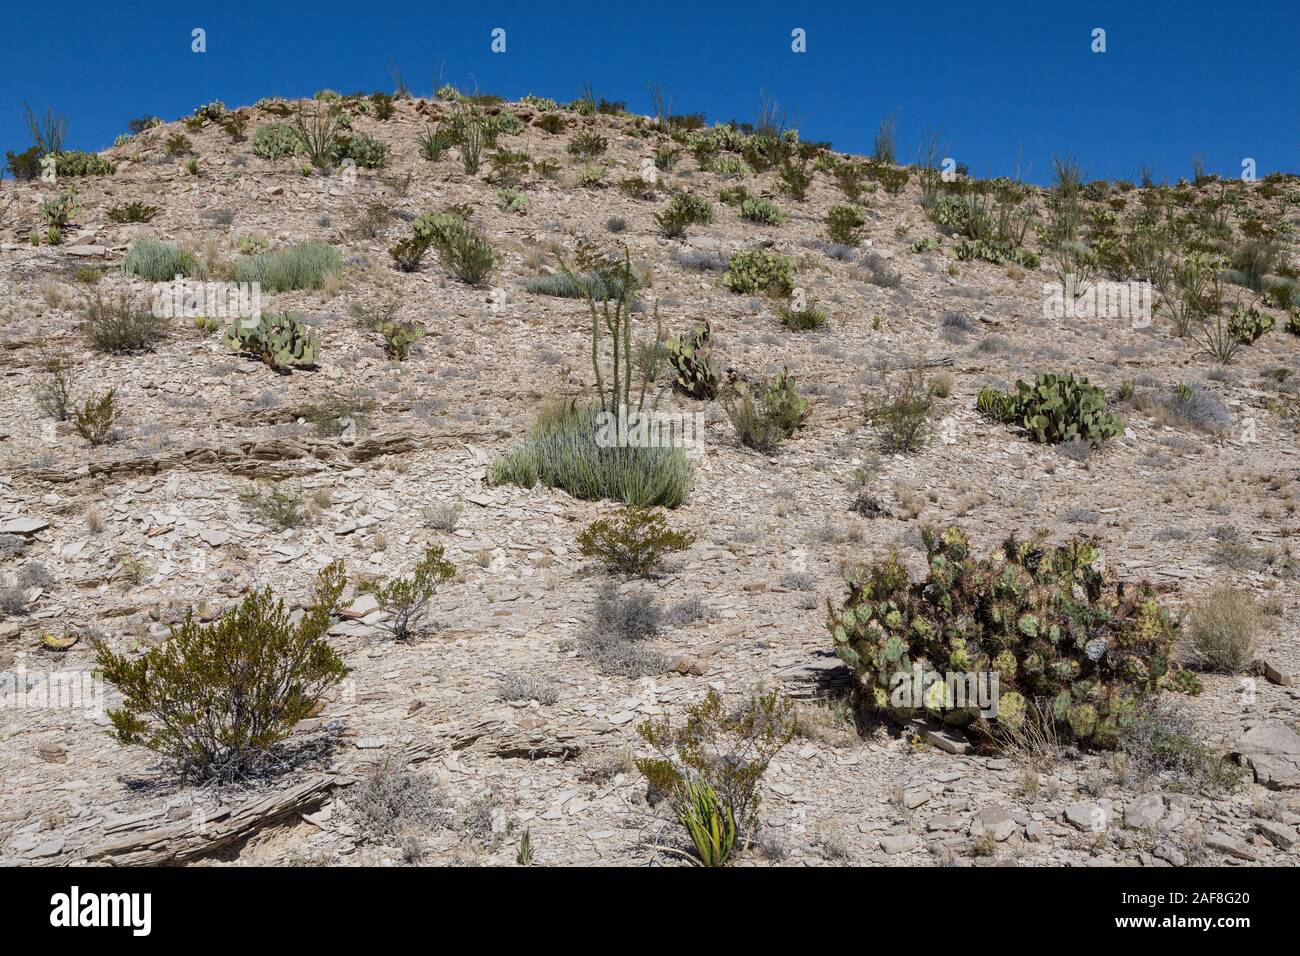 El Parque Nacional de Big Bend, Texas. La vegetación del desierto chihuahuense, Pricklypear (Castor) Cactus, Ocotillo, candelilla. Foto de stock